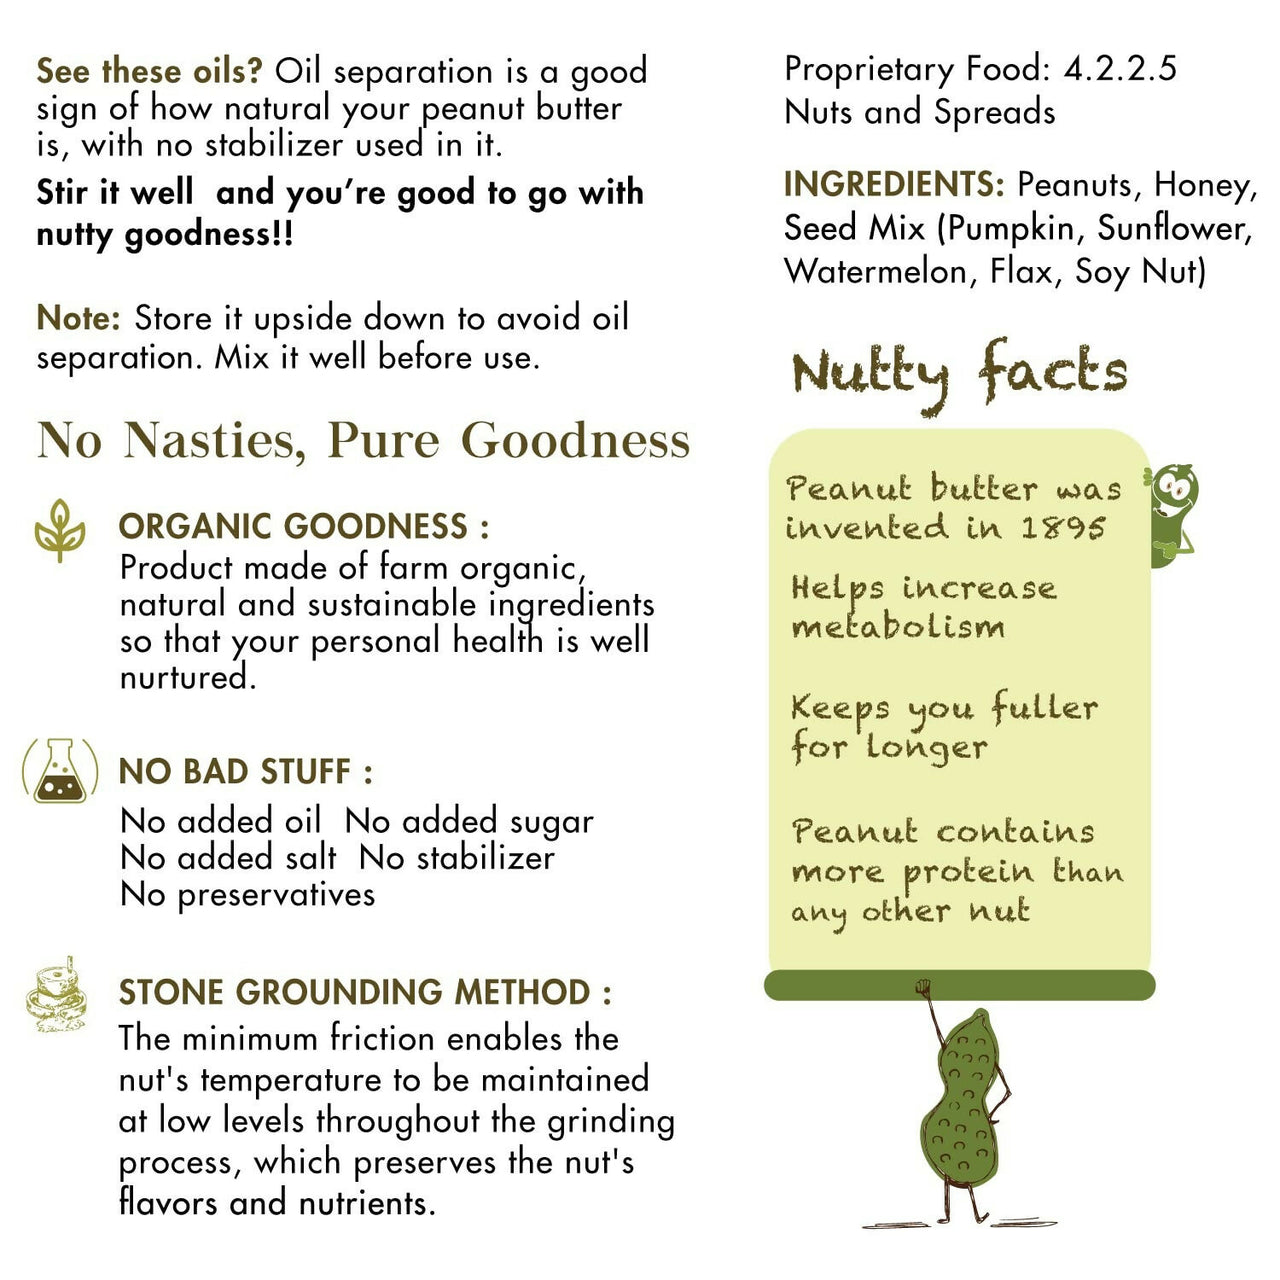 Sorich Organics Seed Peanut Crunchy Butter - Distacart